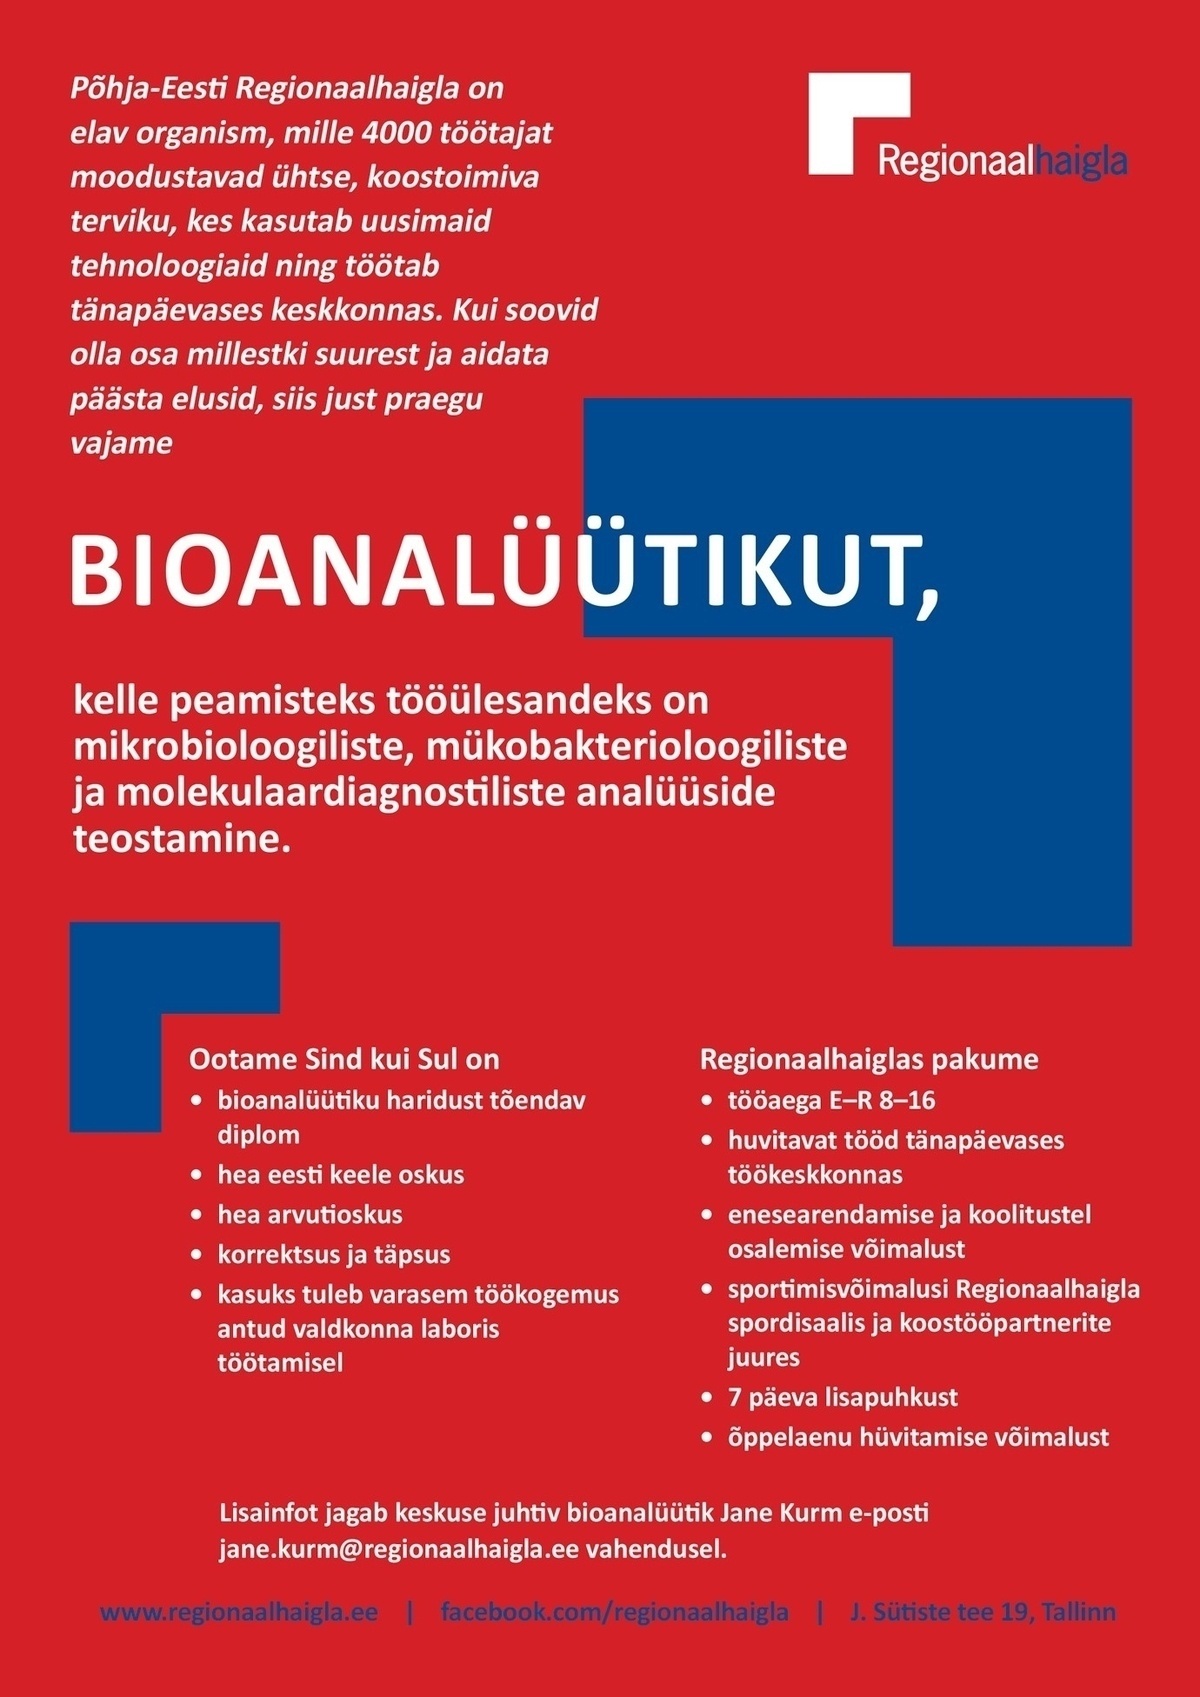 Põhja-Eesti Regionaalhaigla SA Bioanalüütik mikrobioloogia ja molekulaardiagnostika osakonda